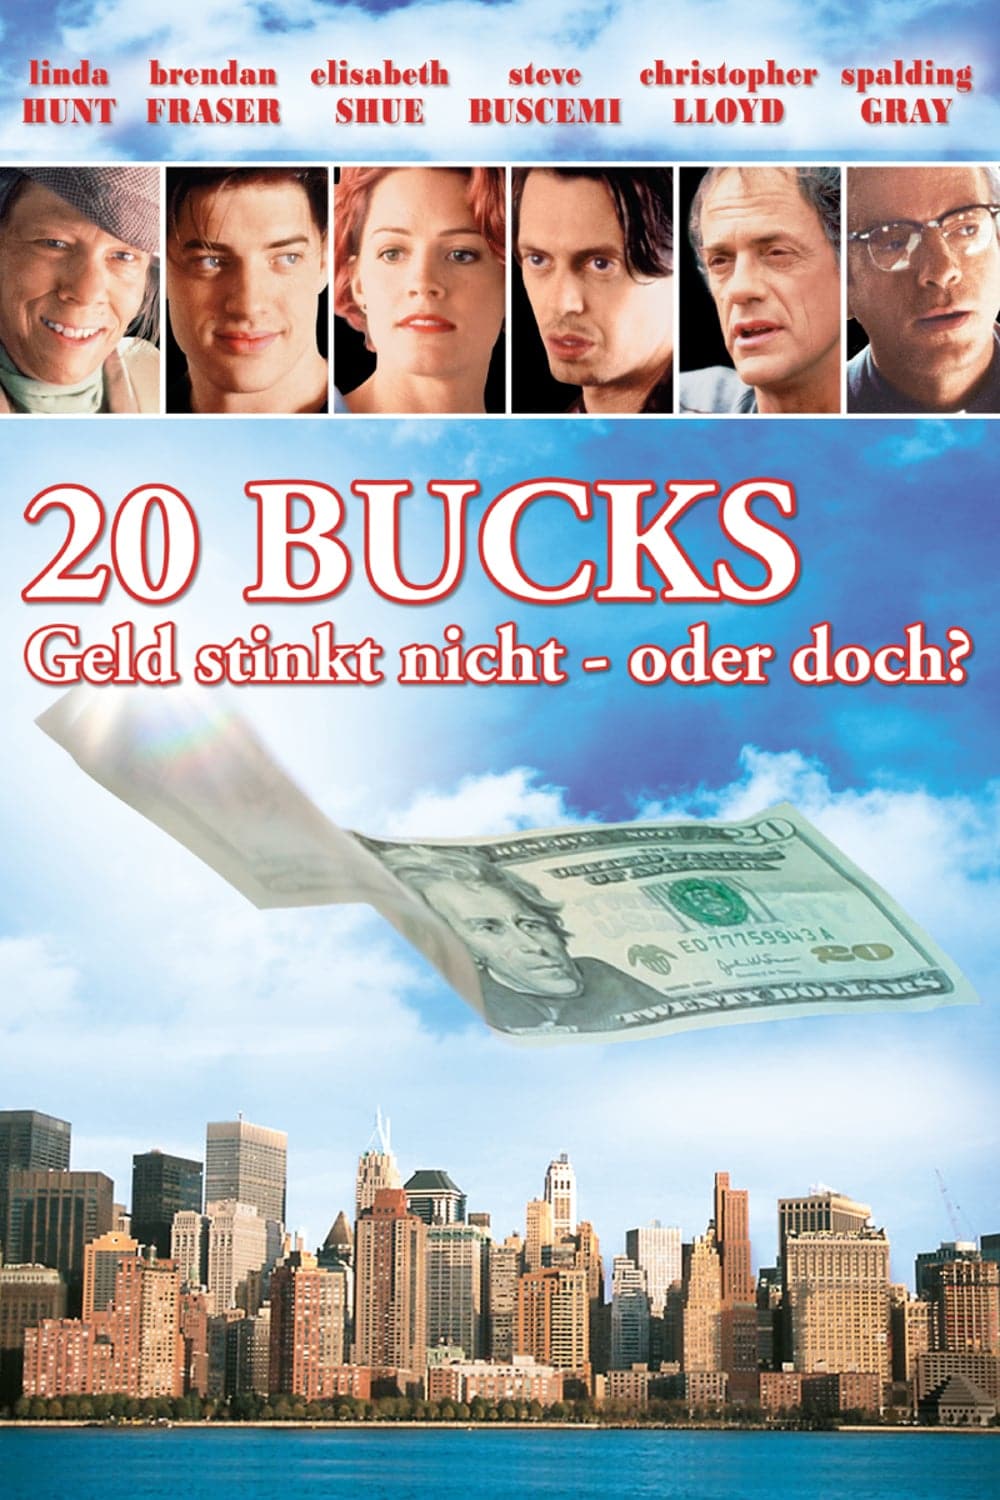 Plakat von "20 Bucks - Geld stinkt nicht oder doch?"